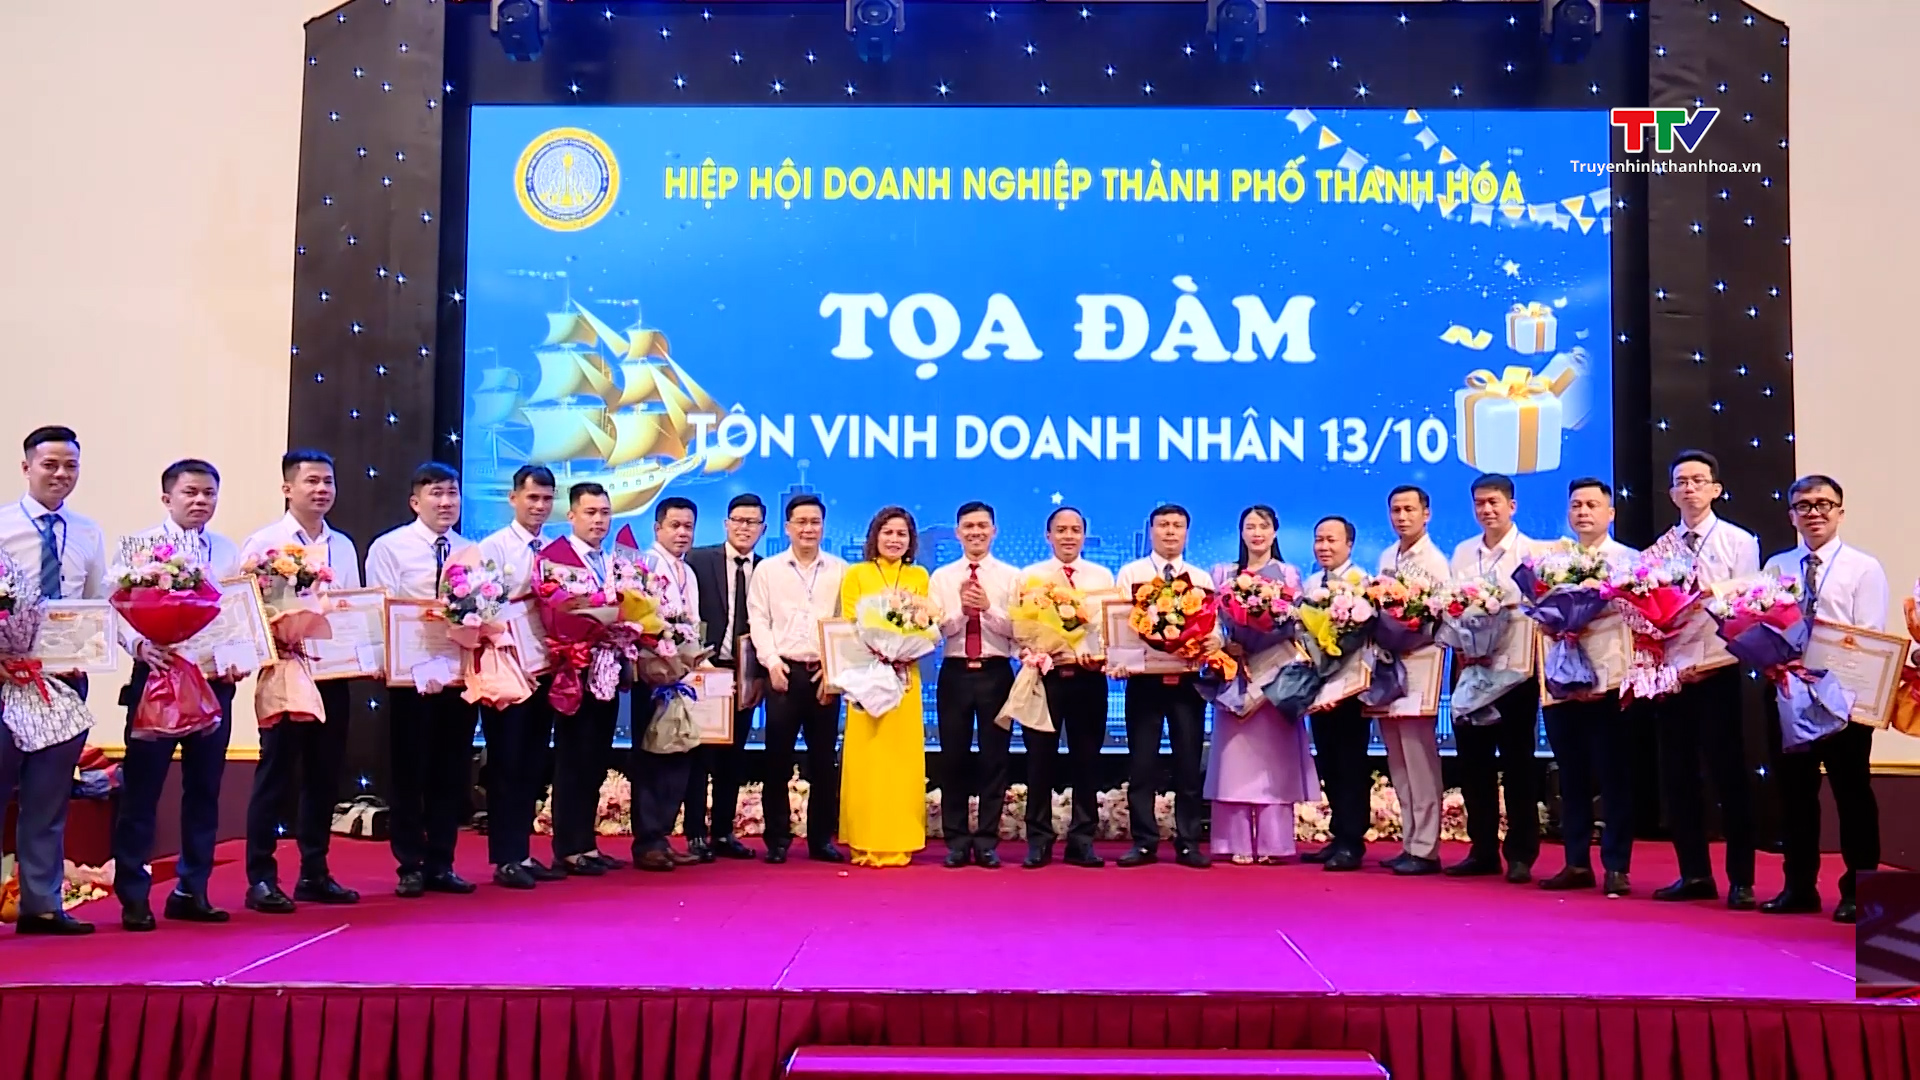 Hiệp hội Doanh nghiệp thành phố Thanh Hóa tọa đàm  - Ảnh 2.